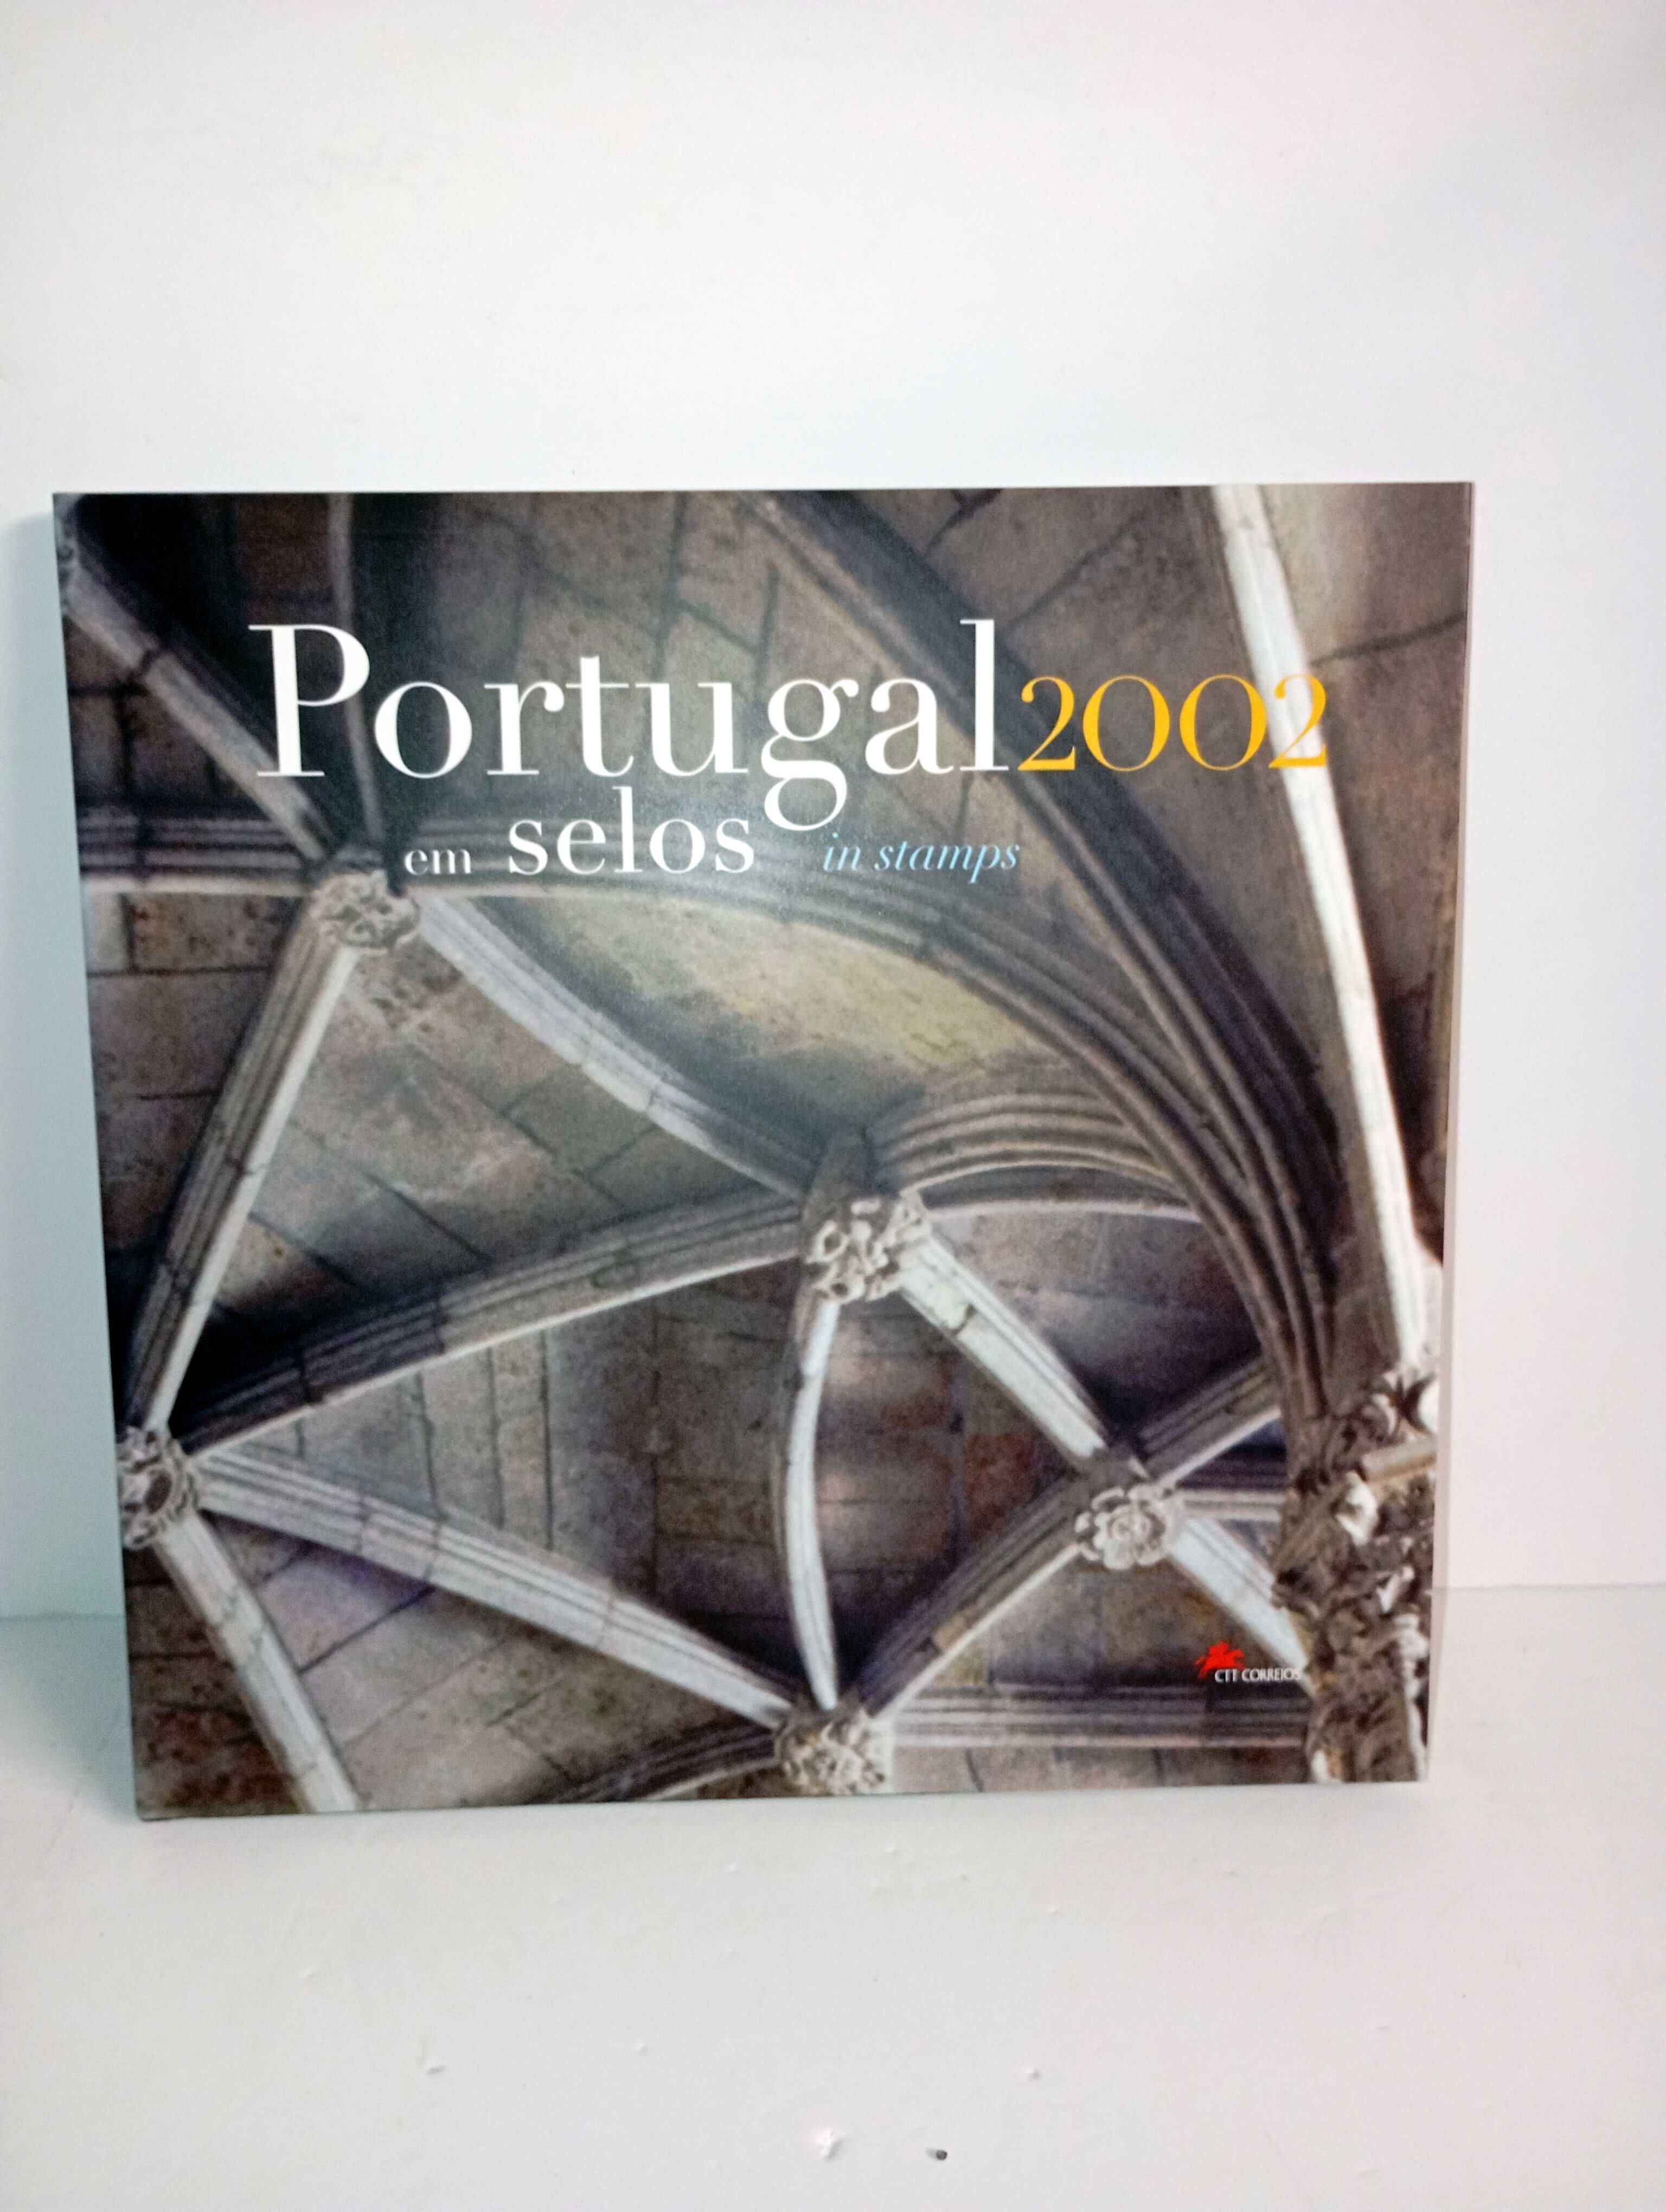 Portugal em selos 2002 - Livro CTT